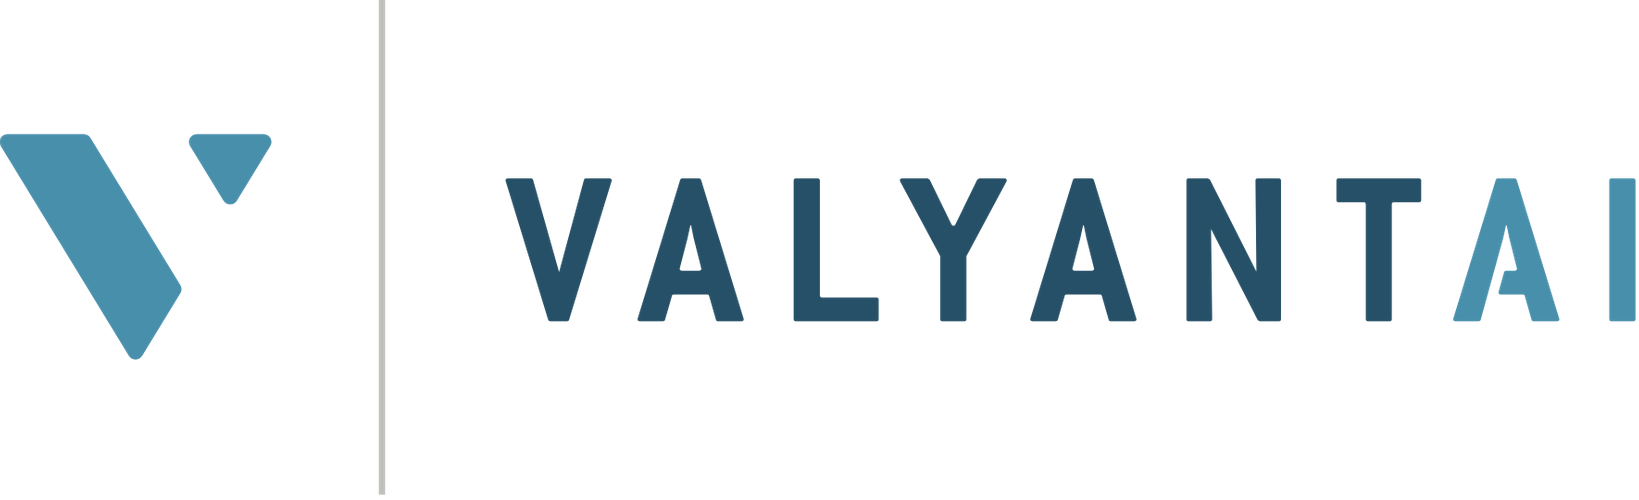 valyant_logo.png